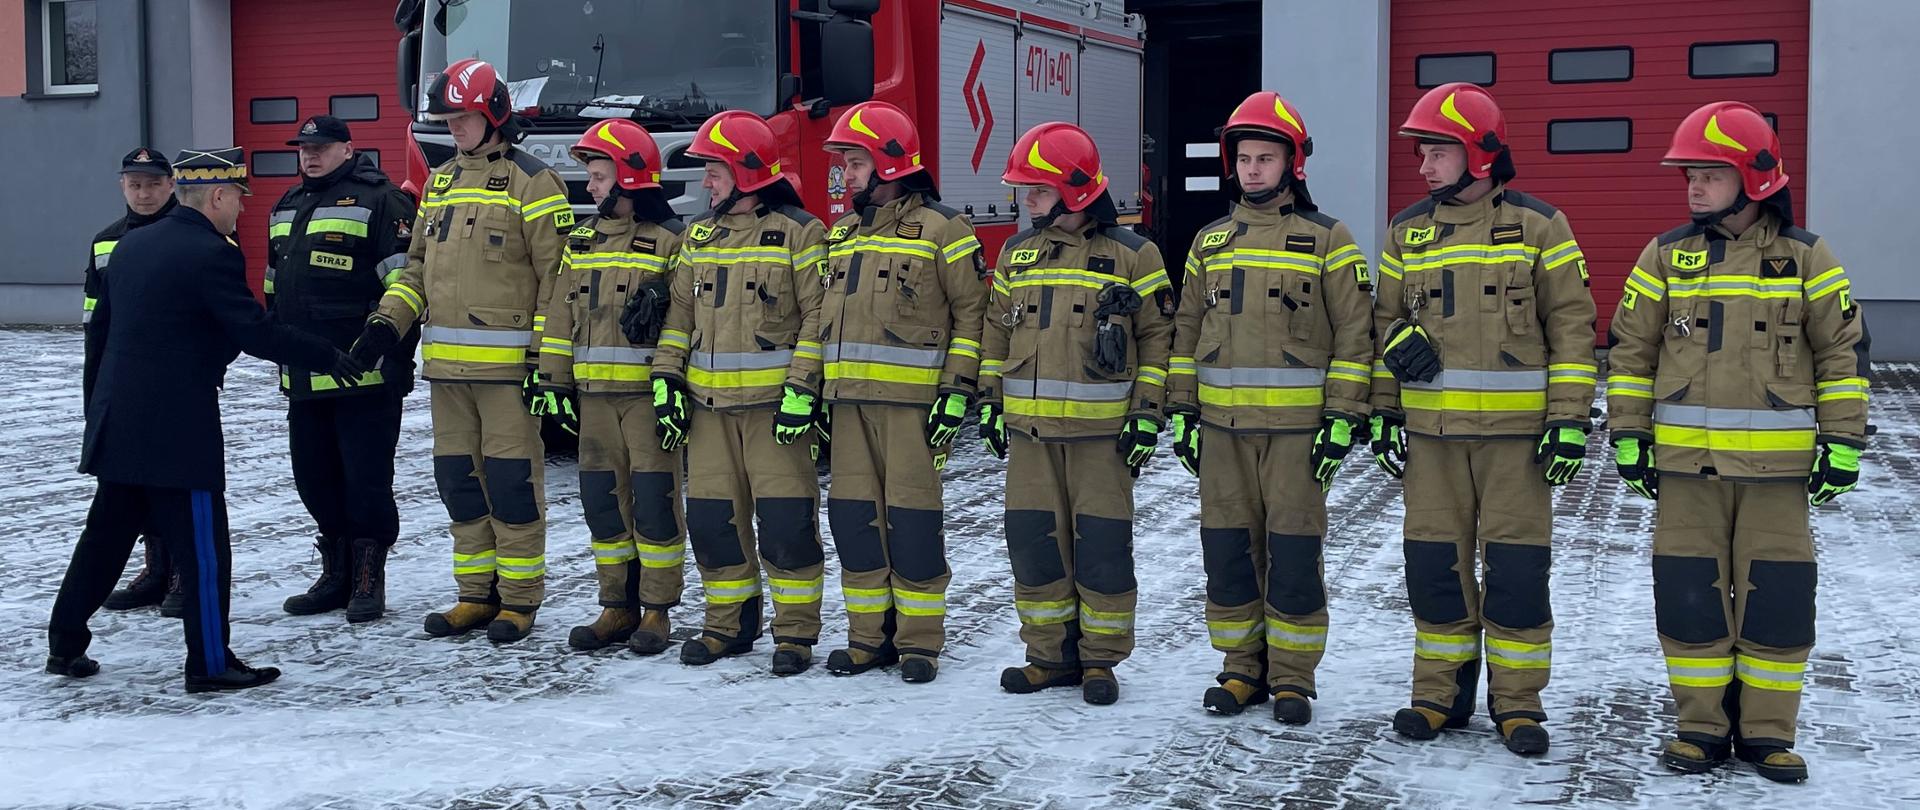 Na zdjęciu widać 10 strażaków stojących w szeregu. Komendant główny PSP wita się ze strażakami.